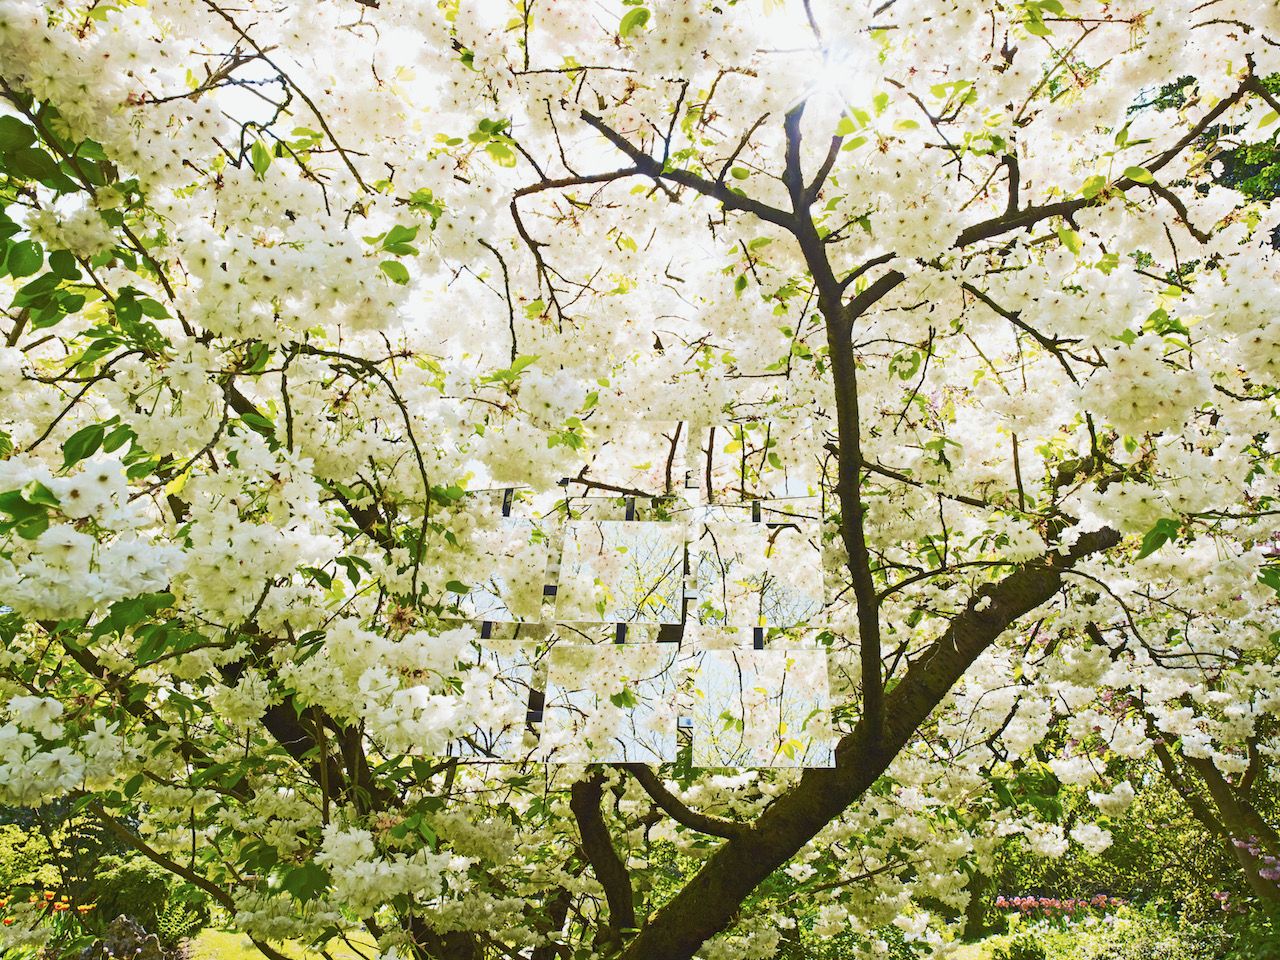 Michael Haegele Fotografía de naturaleza Vista interior Corona de árbol con flores blancas y nueve espejos dispuestos